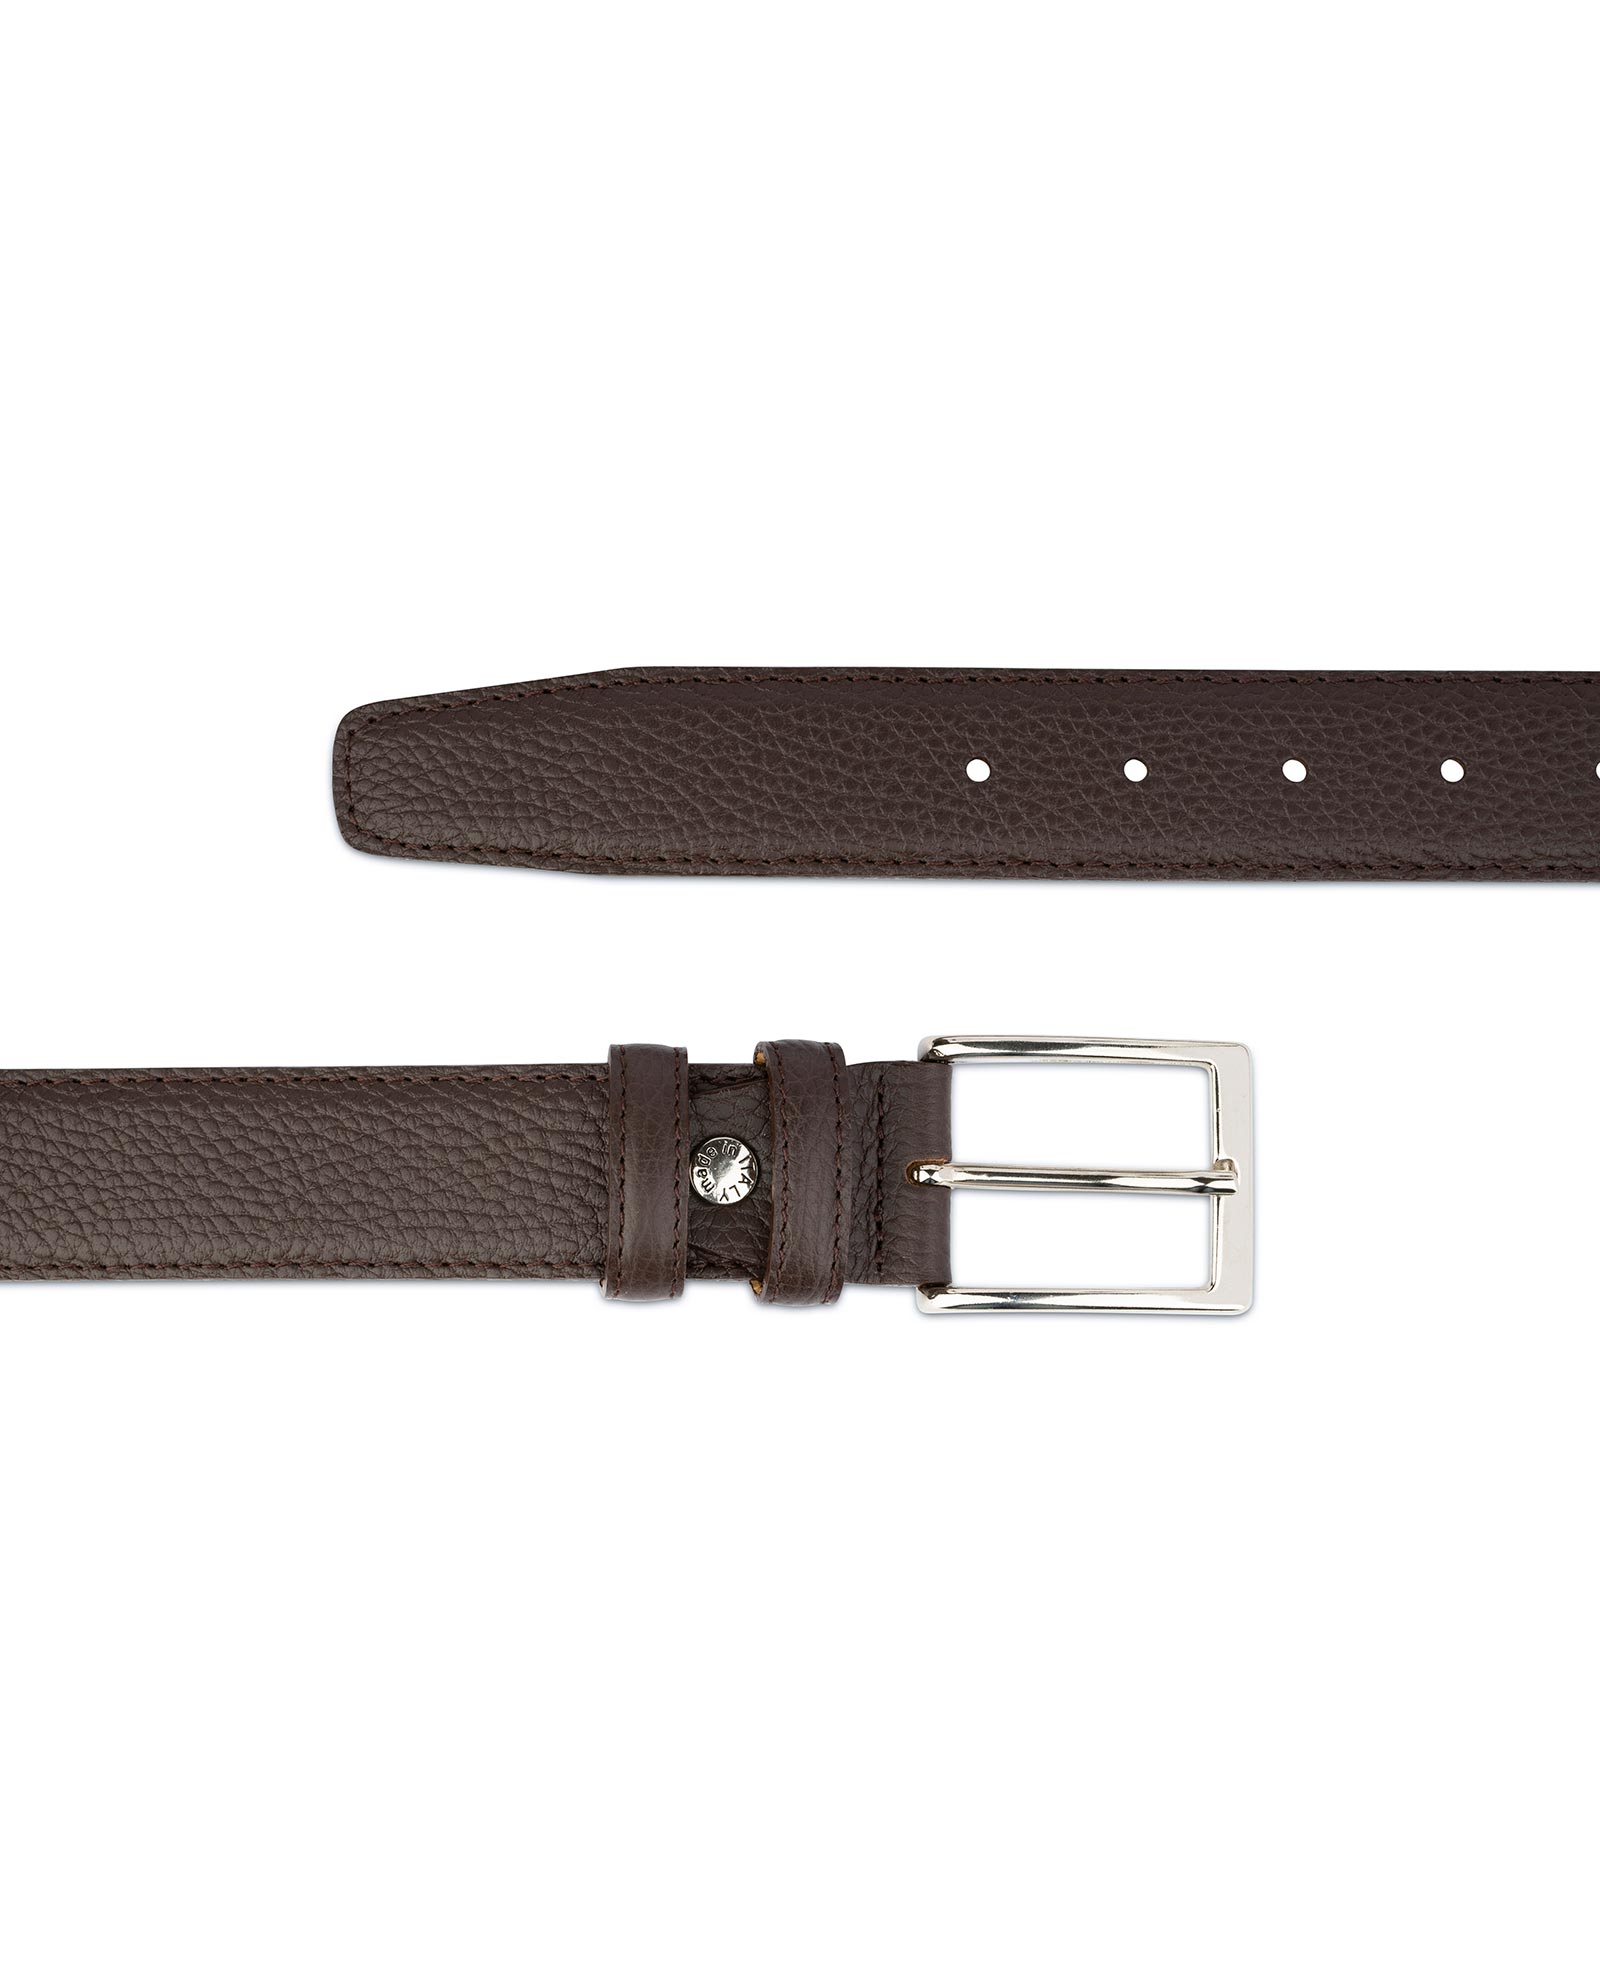 Buy Gift For Dad - Brown Leather Belt - LeatherBeltsOnline.com